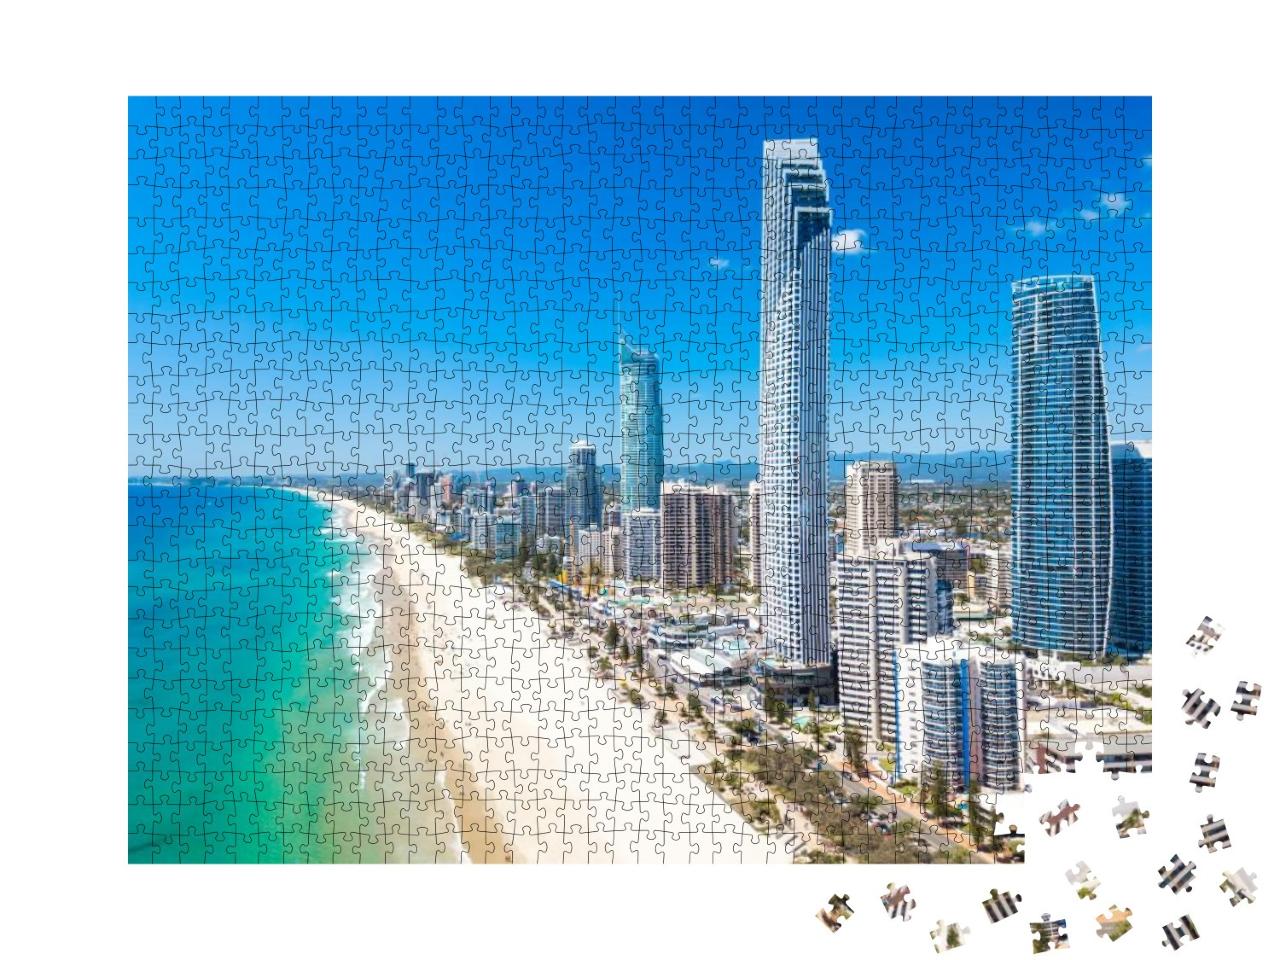 Puzzle 1000 Teile „Stadtteil Surfers Paradise der Stadt Gold Coast, Australien“